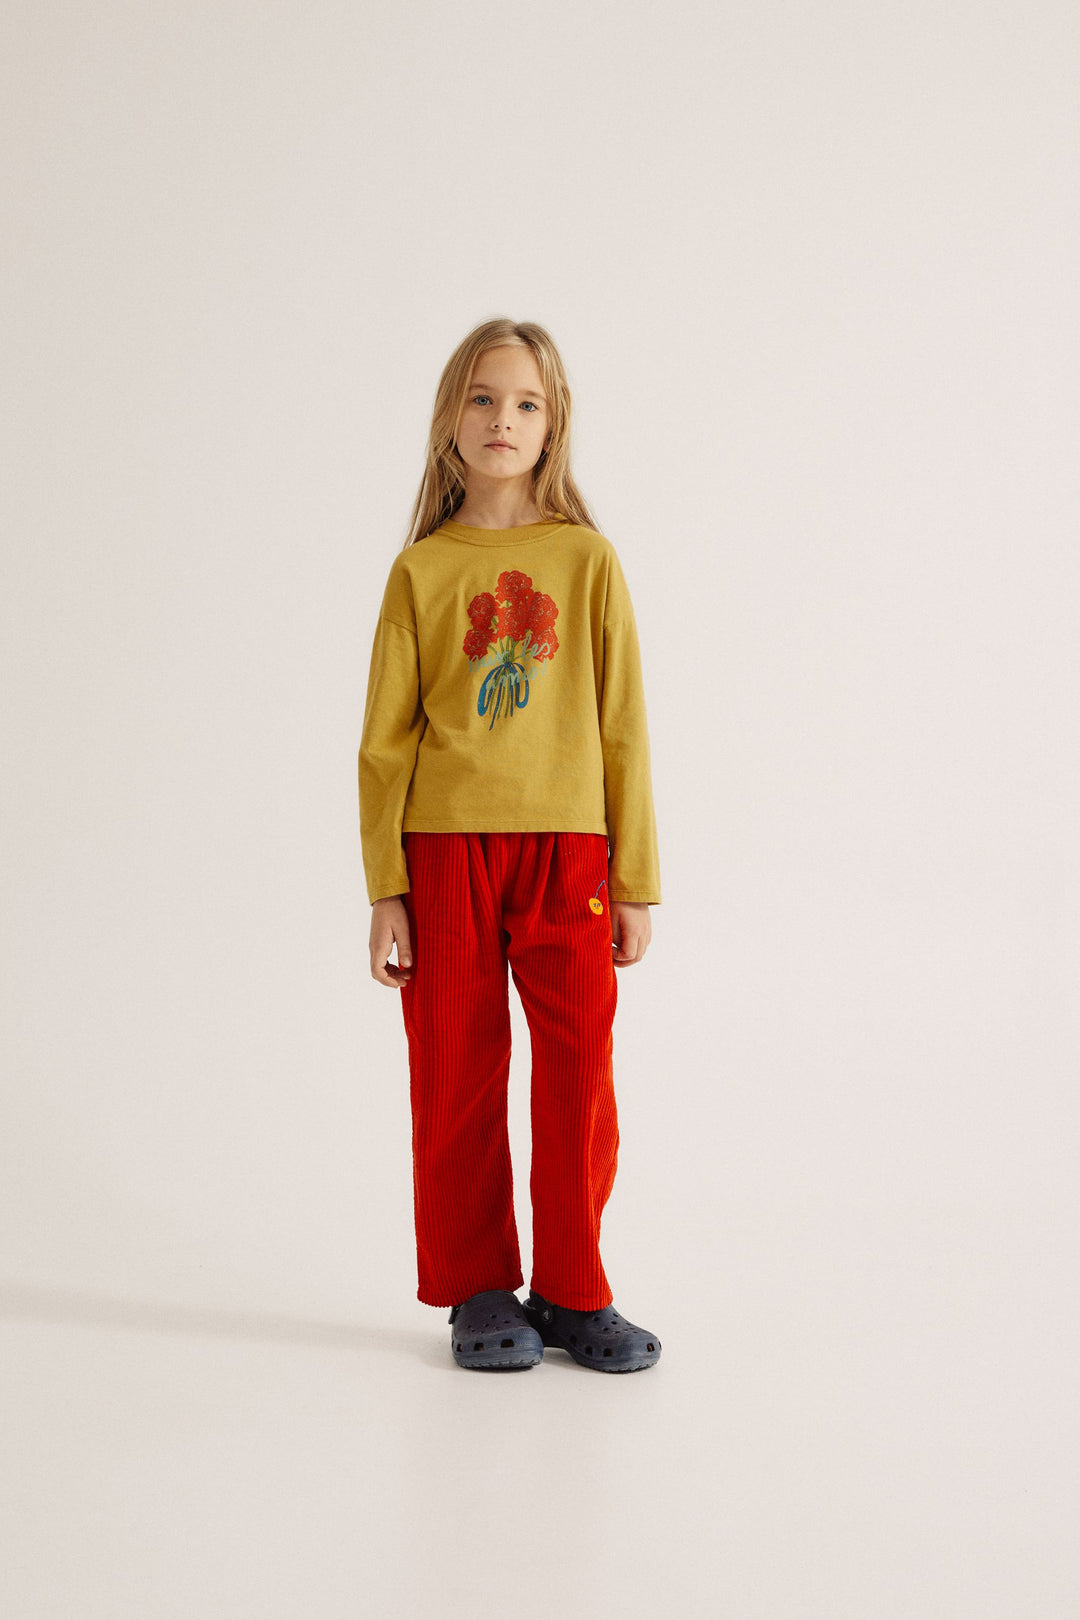 Enfant avec Tshirt manches longues moutard imprimé Bouquet de fleurs